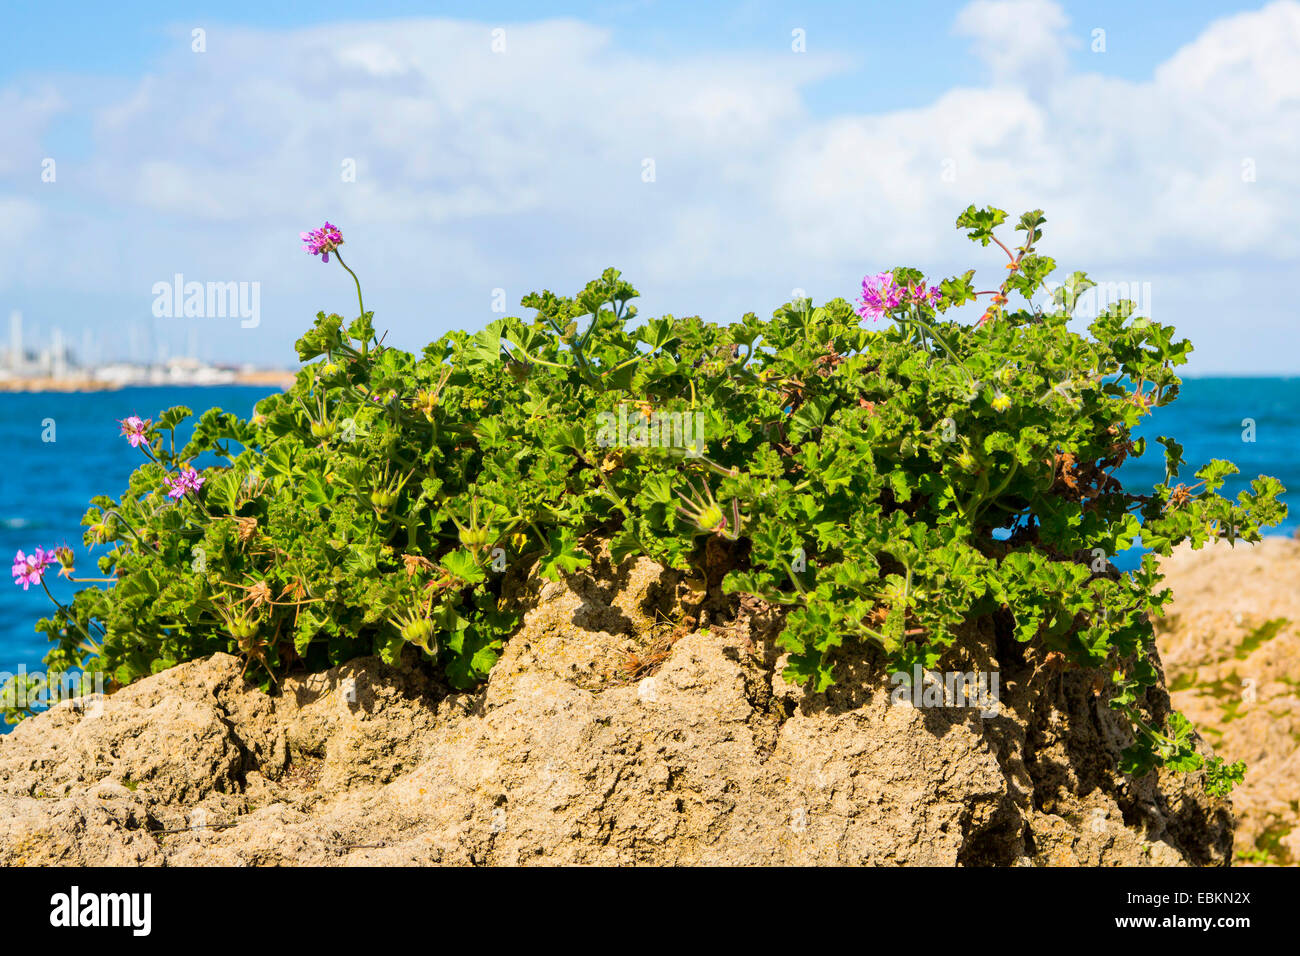 geranium (Pelargonium spec.), geranium on the beach, Australia, Western Australia, Fremantle Stock Photo